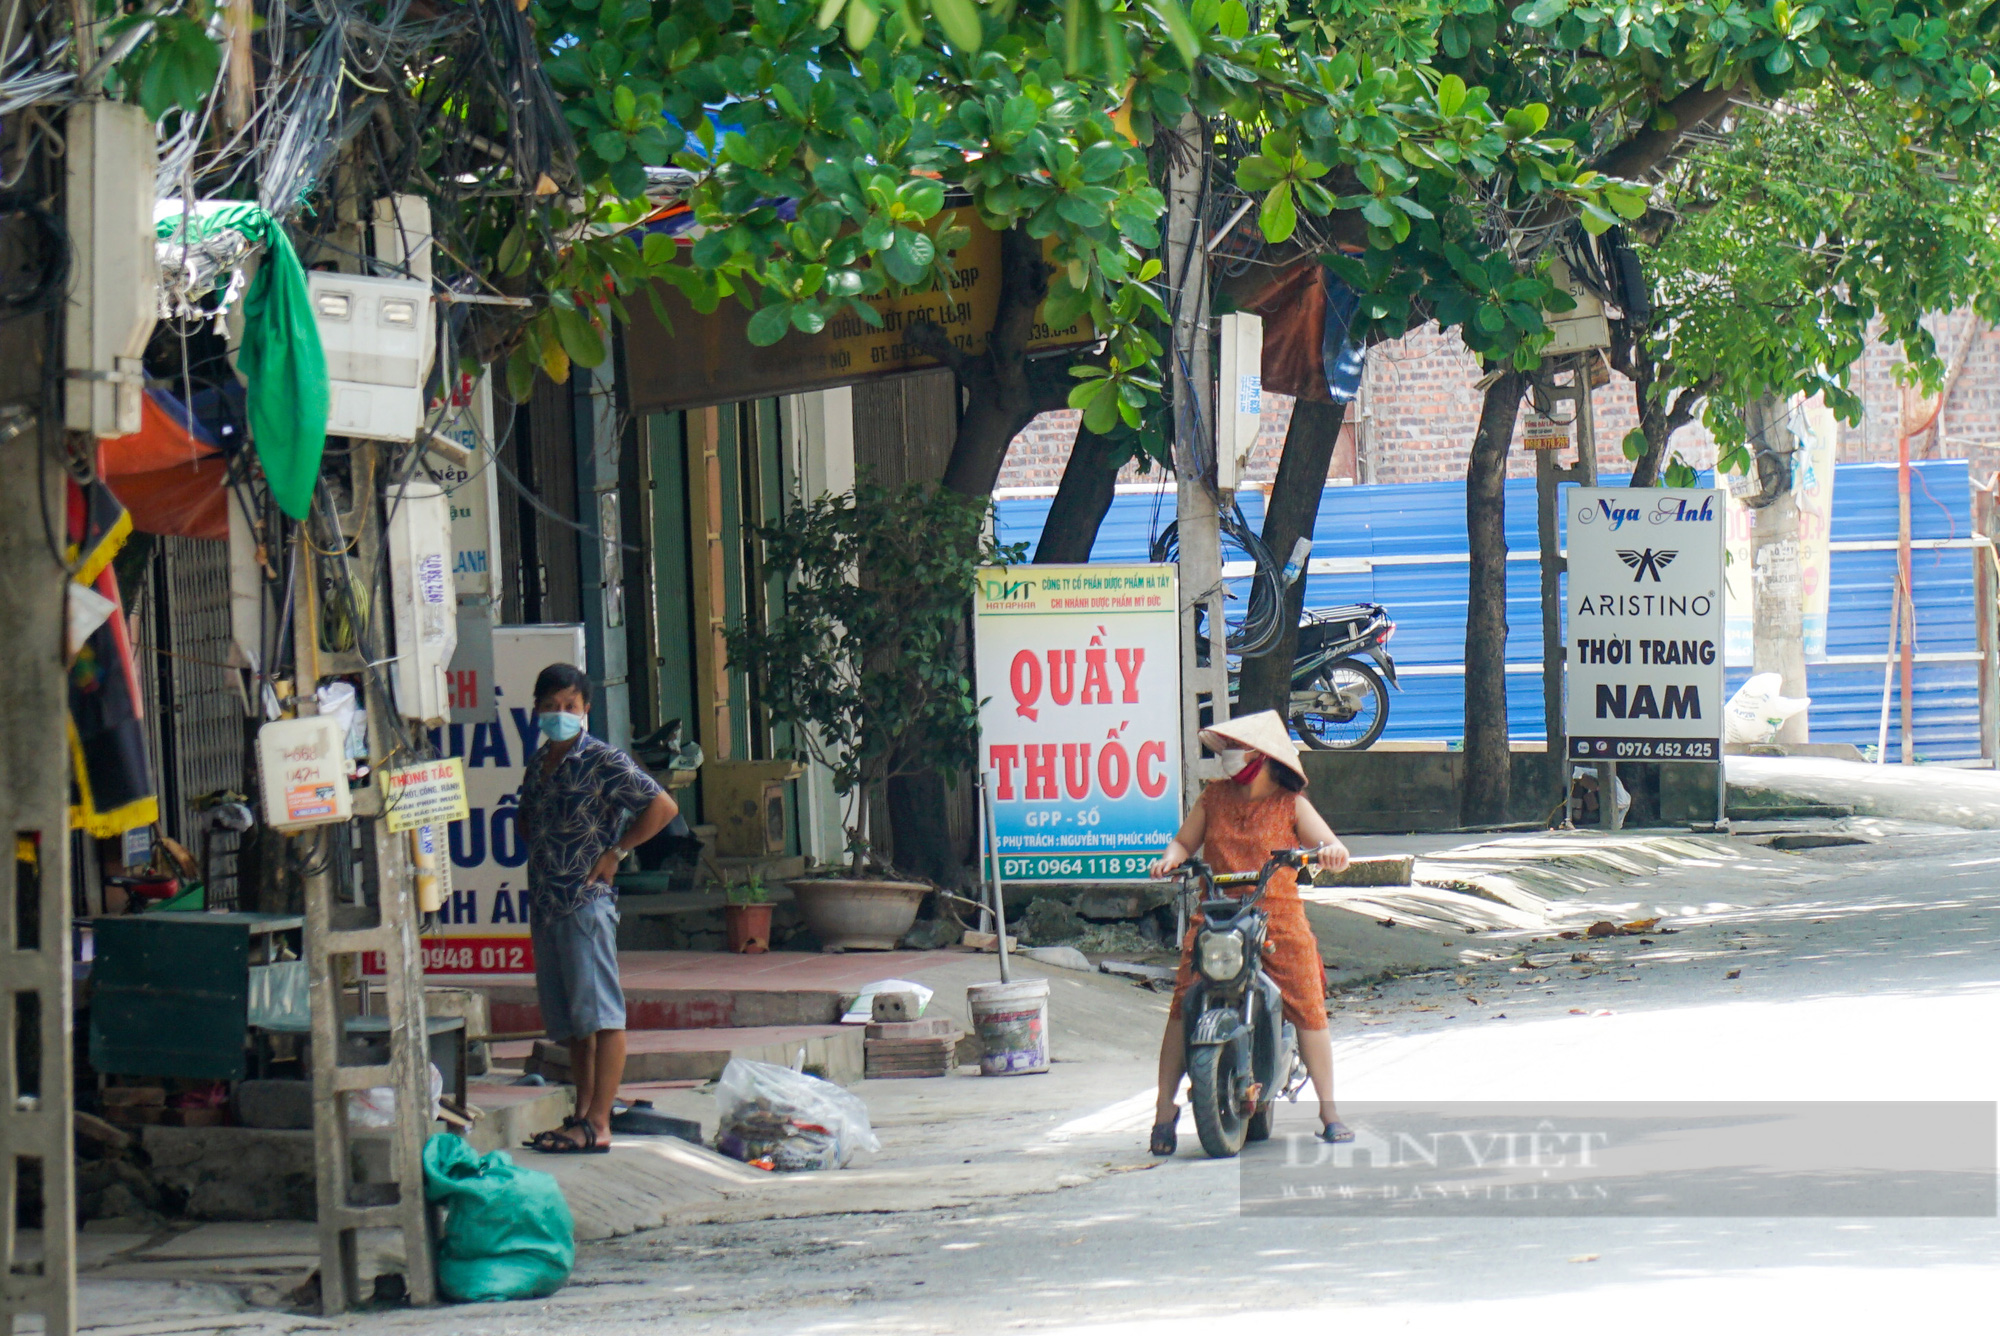 Toàn cảnh 1 thôn hơn 2.000 dân của Hà Nội bị cách ly y tế - Ảnh 2.